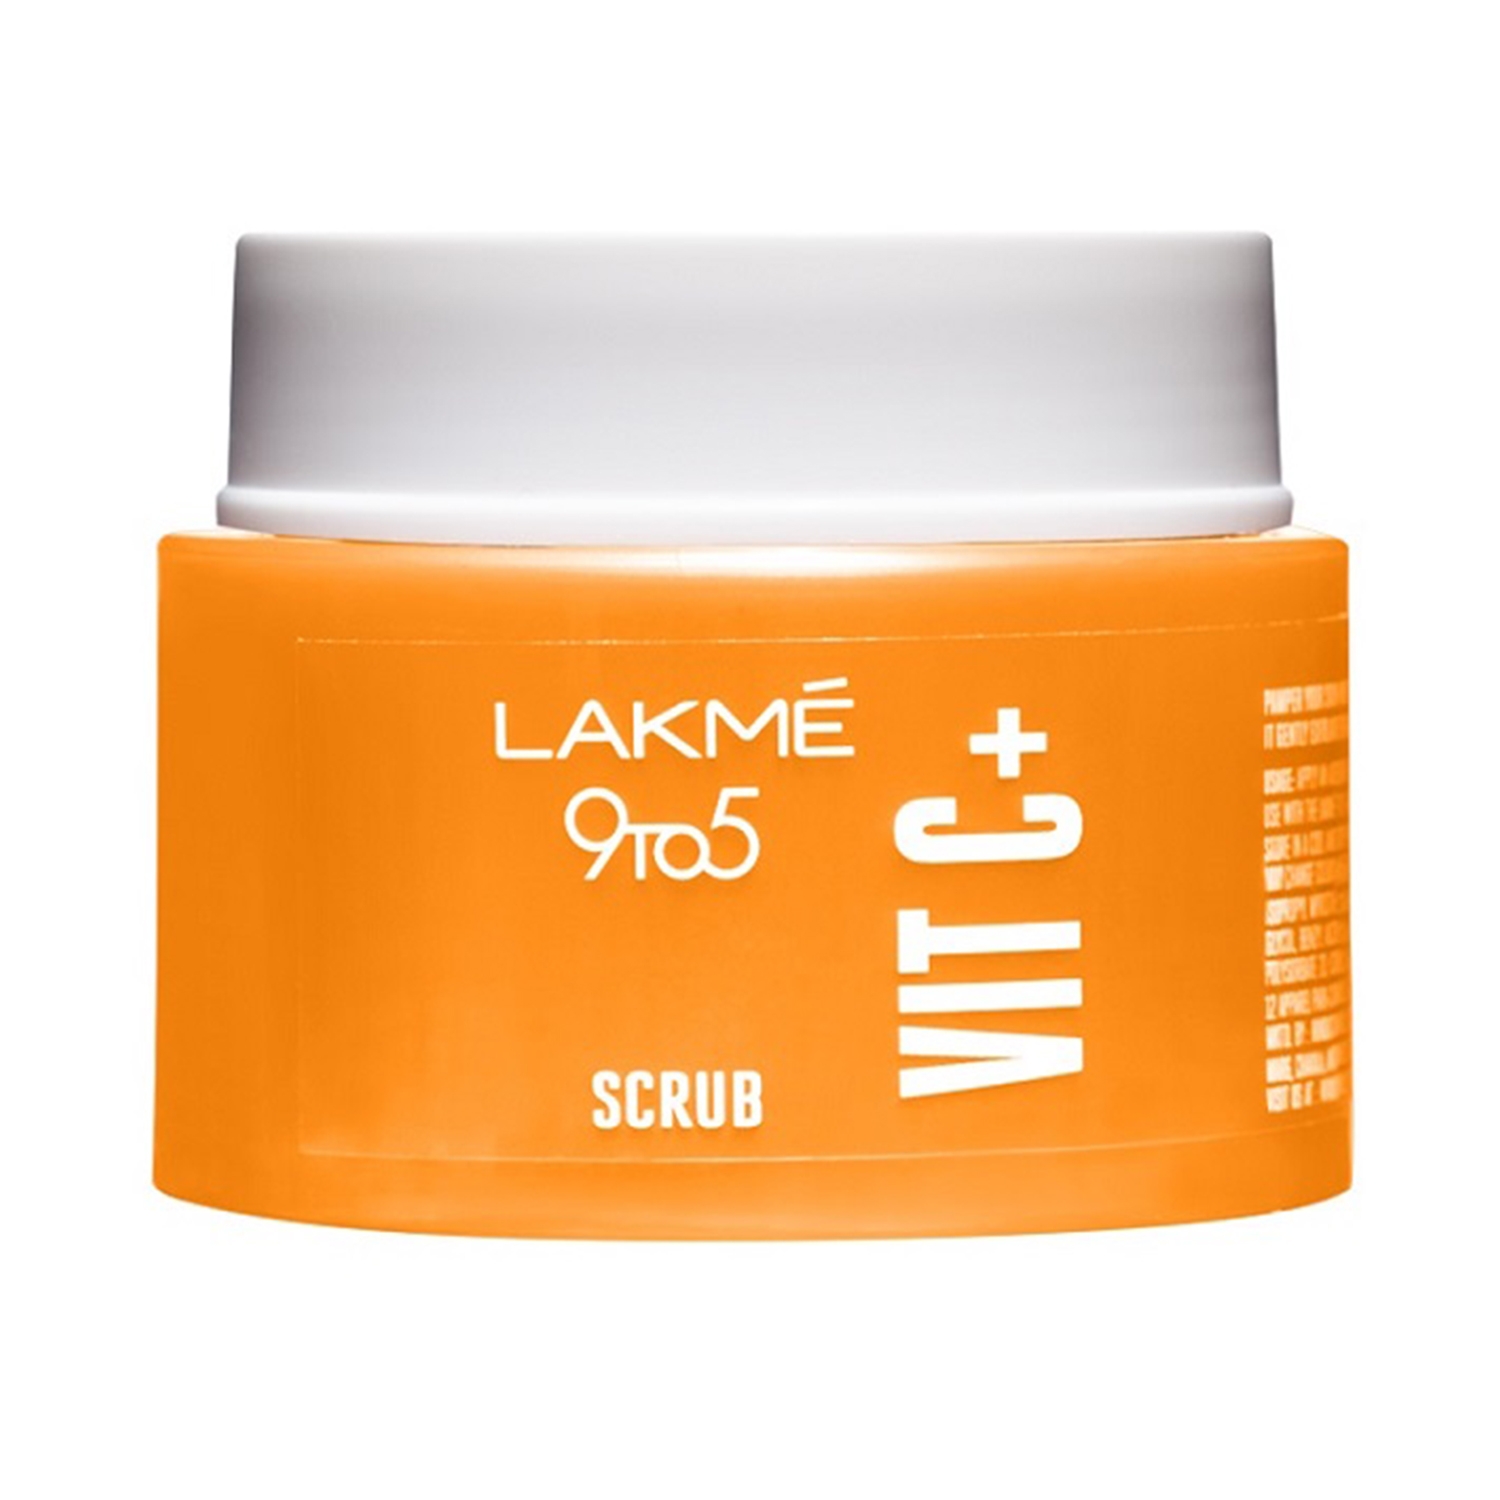 Lakme | Lakme 9 To 5 Vit C+ Scrub Removes Impurities & Refreshes Skin (50g)